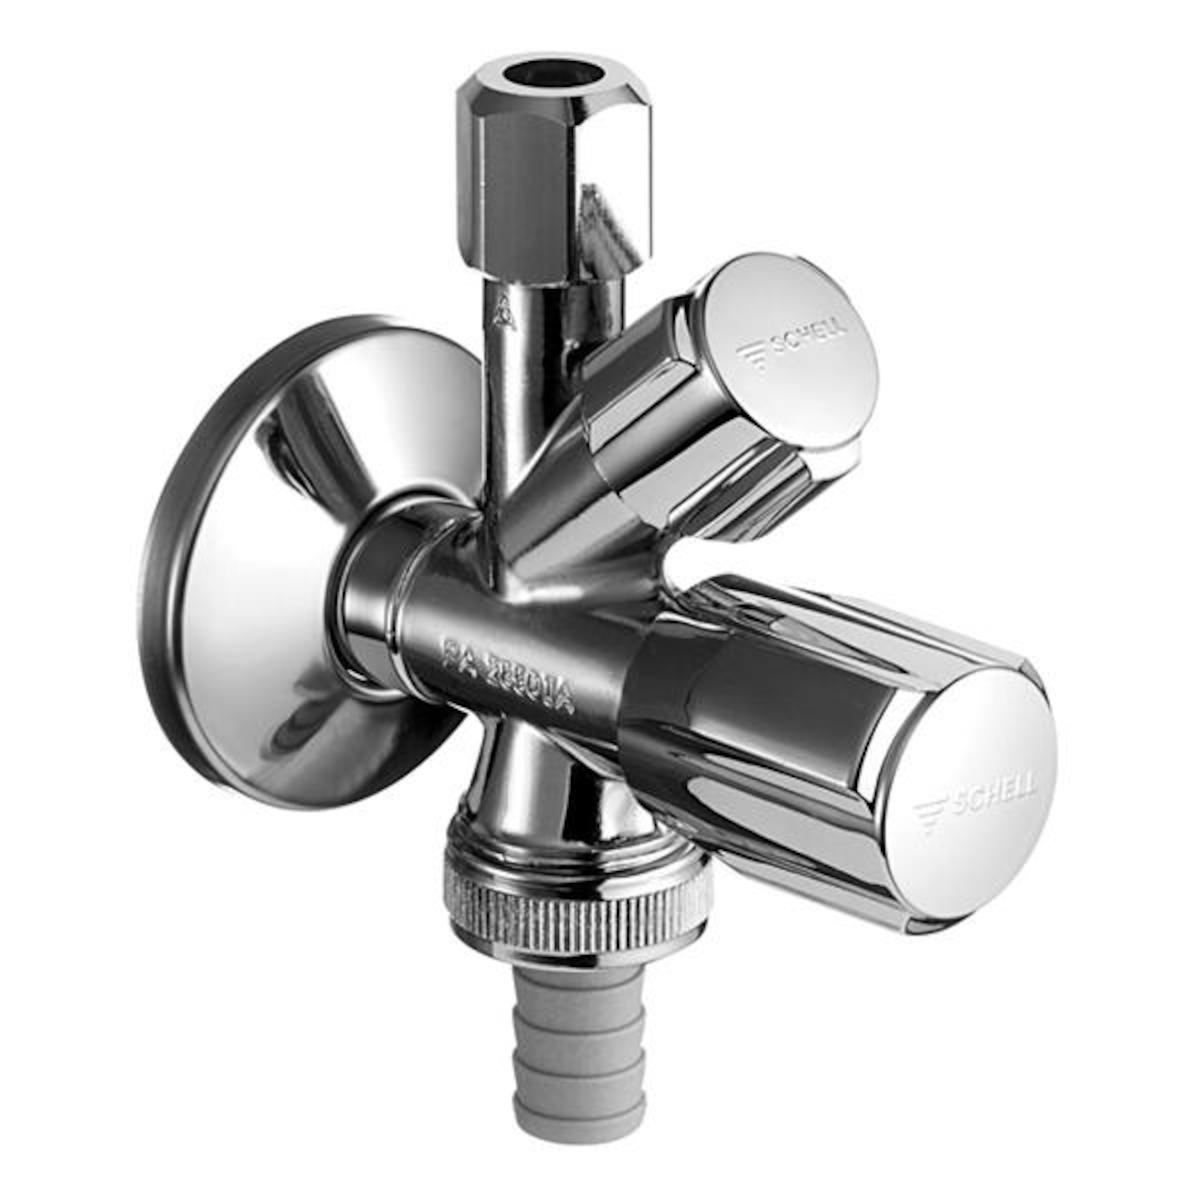 E-shop Schell COMFORT ventil kombinovaný 1/2" x 3/4" x 3/8" 035510699